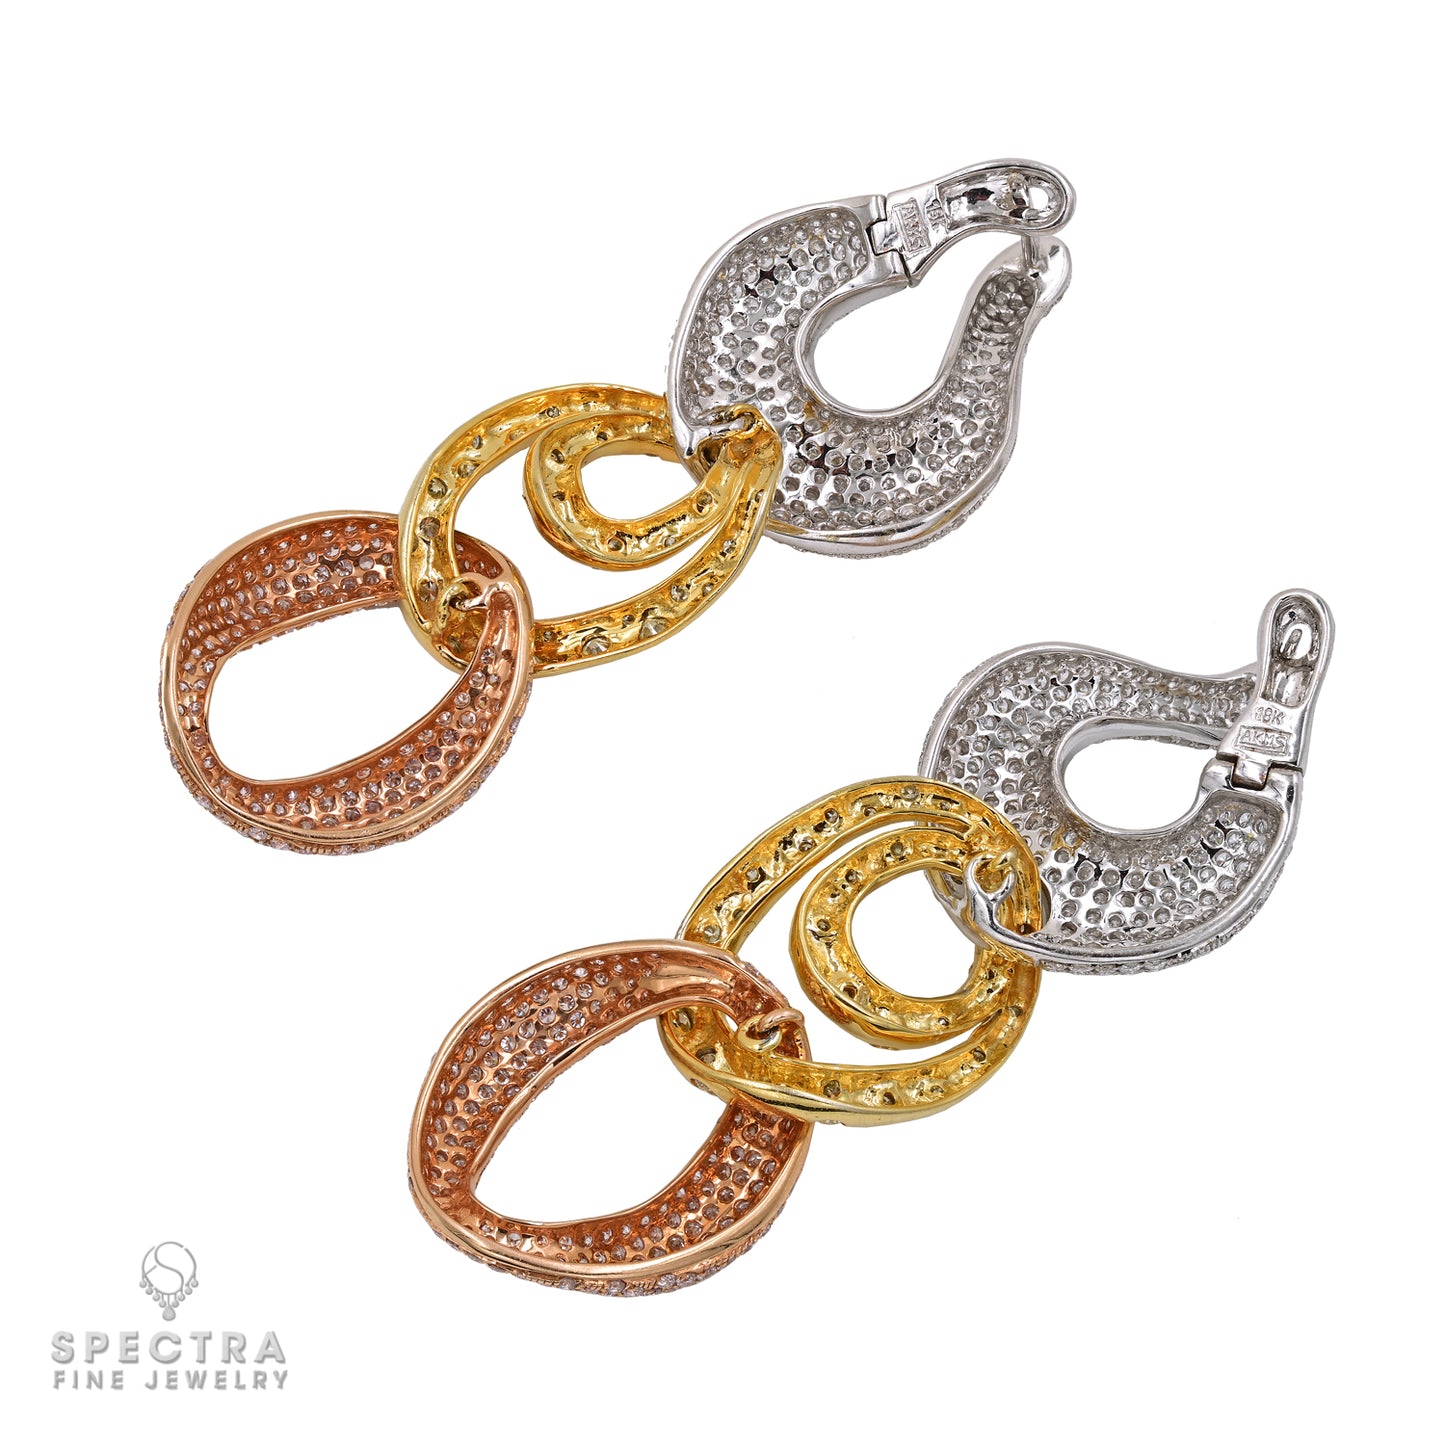 Contemporary Diamond Pave Chain Link Necklace Earrings Demi Parure Suite